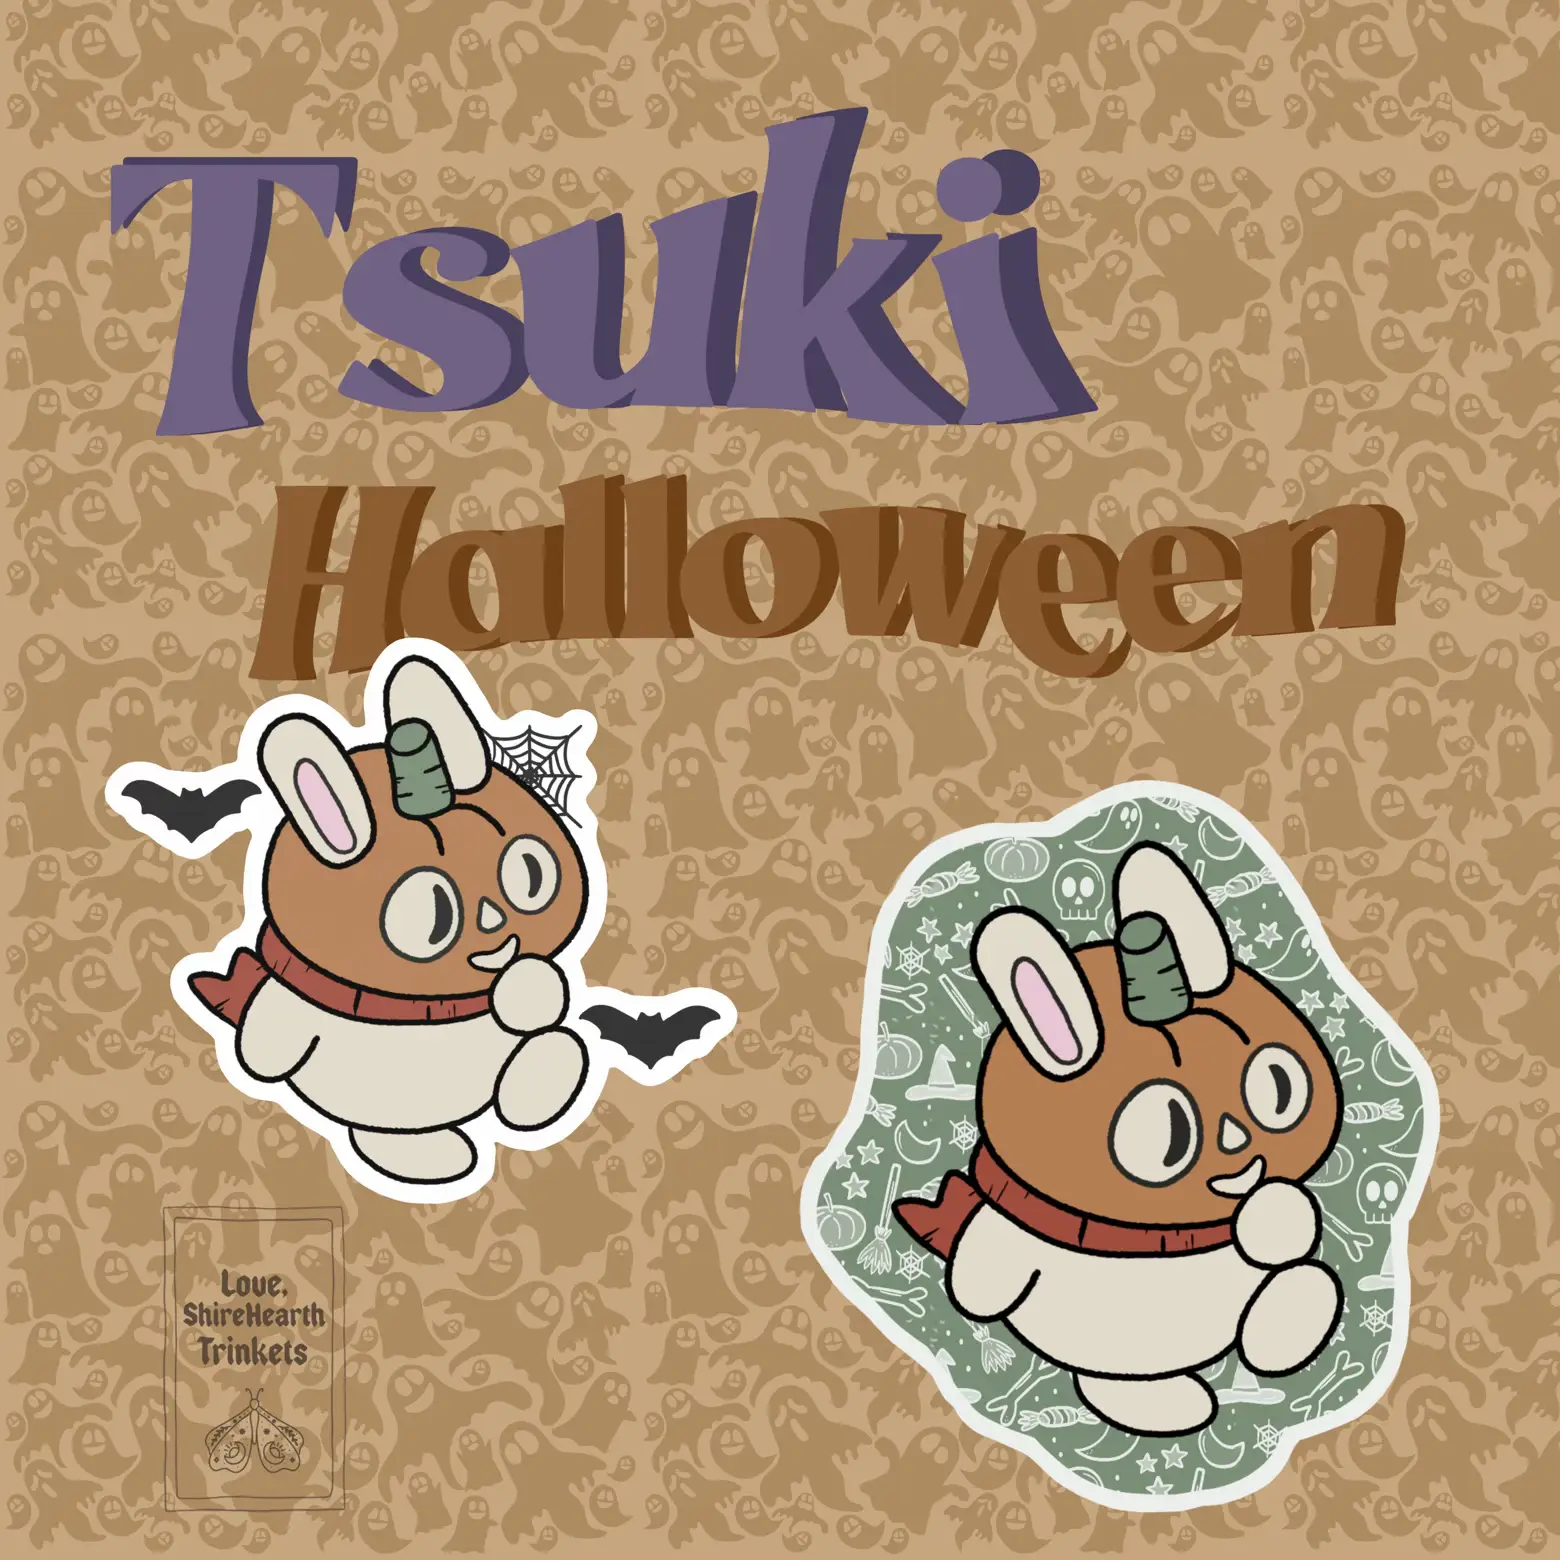 Tsuki (tsukisodyssey@) / X